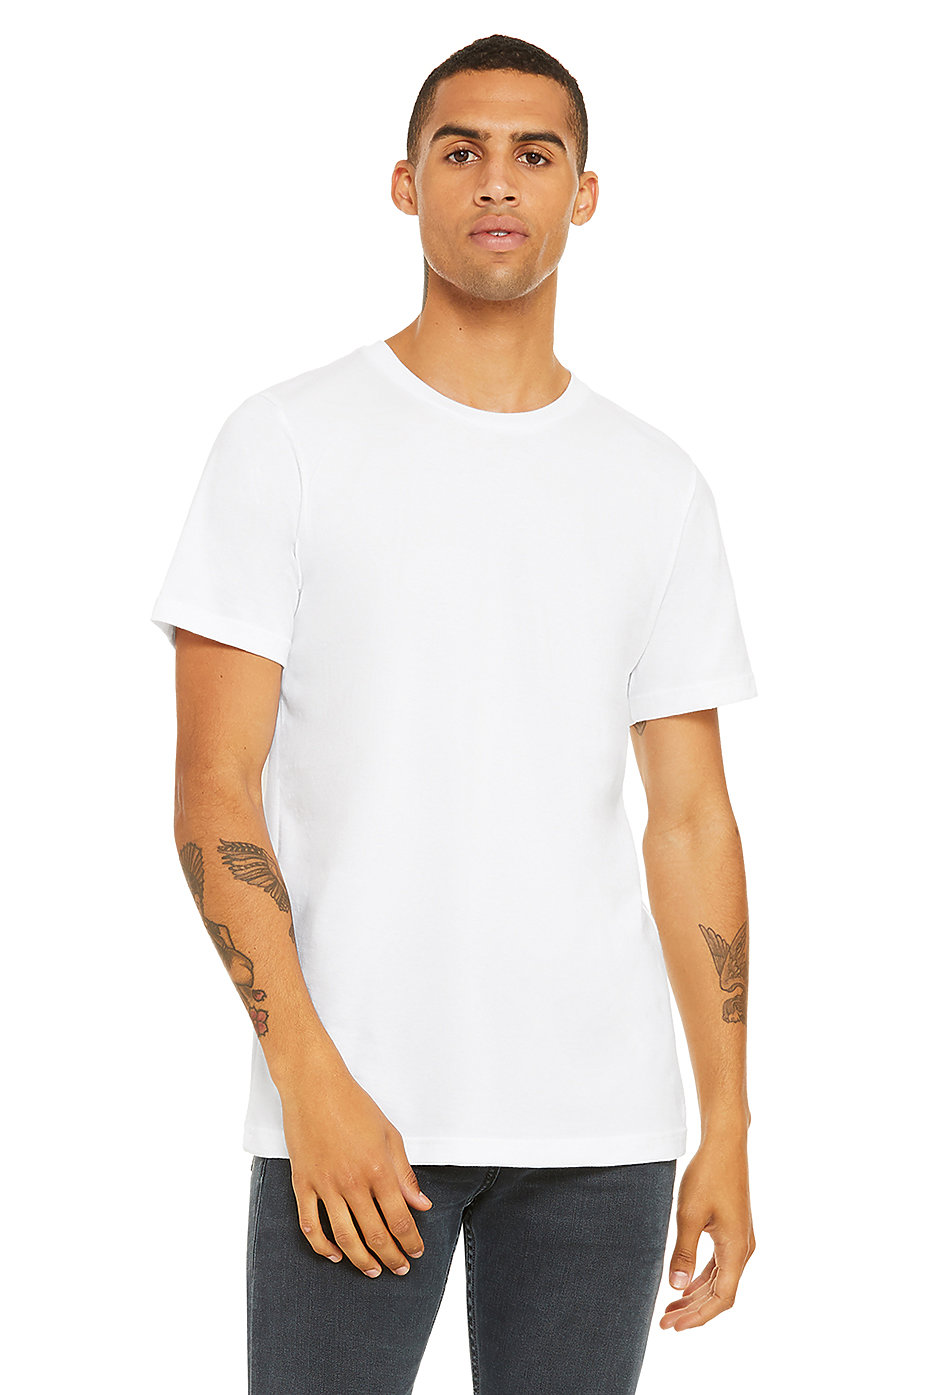 cotton jersey t shirt wholesale